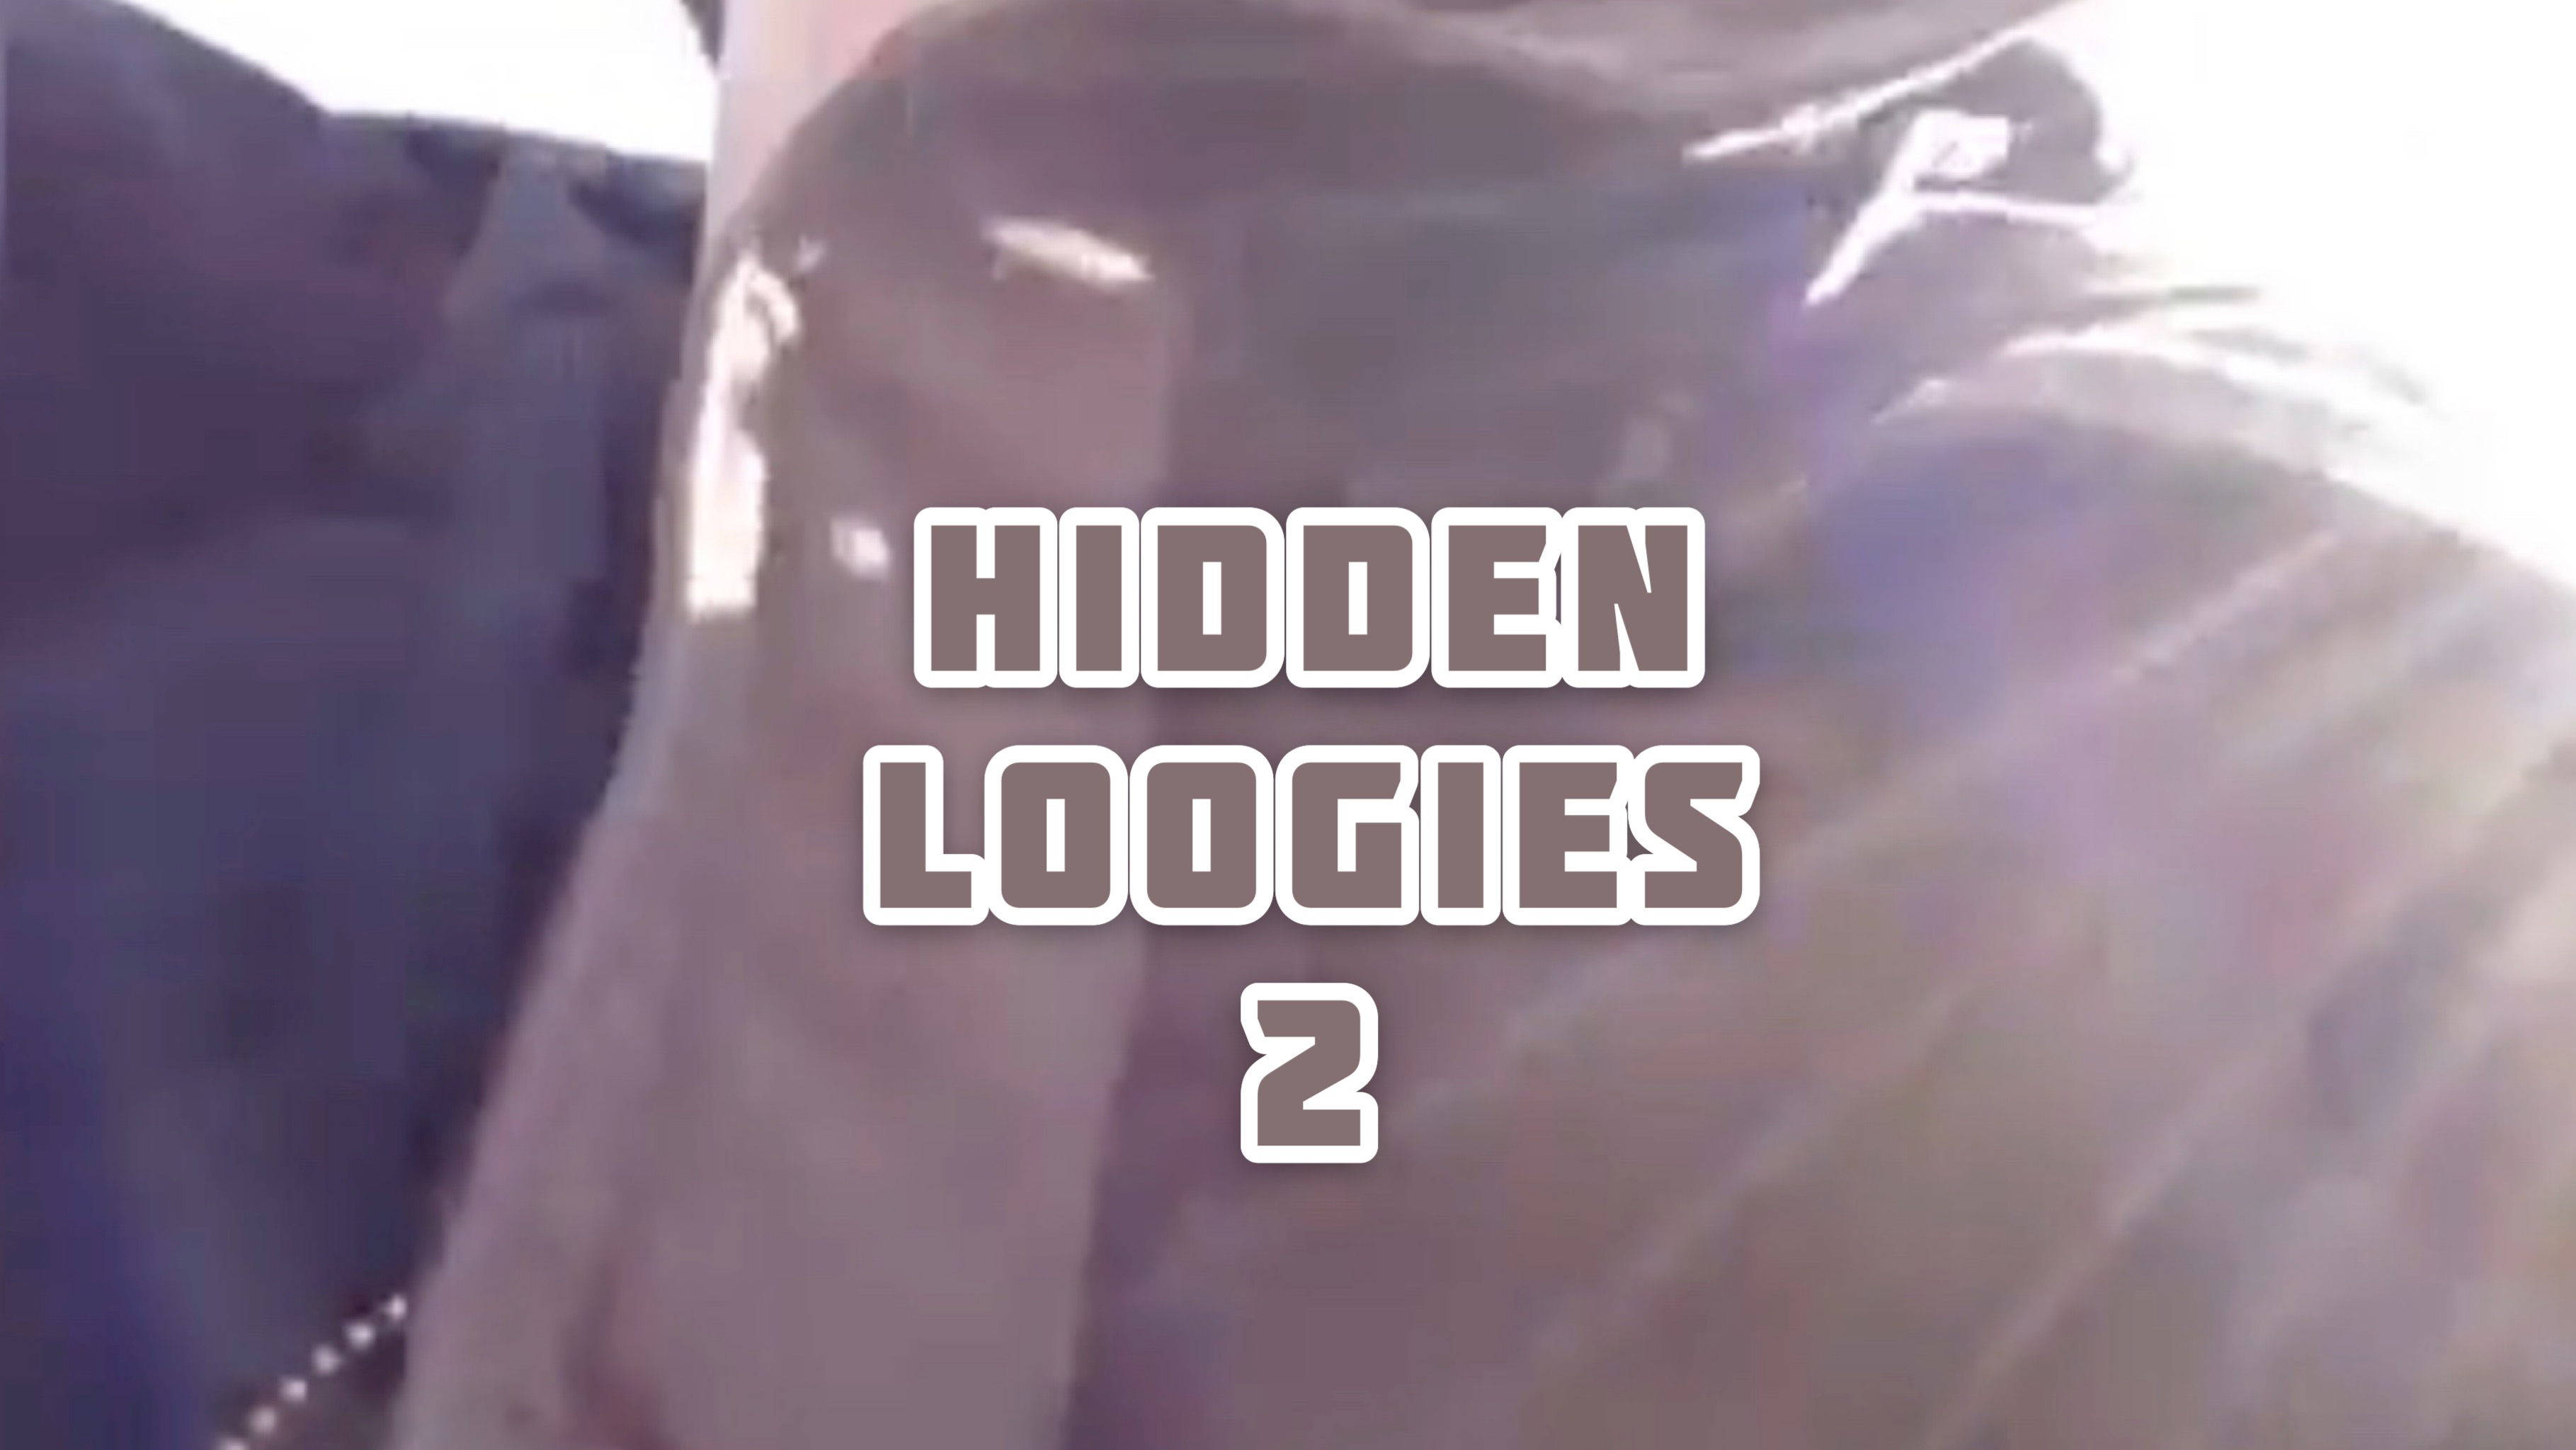 Hidden Loogies 2